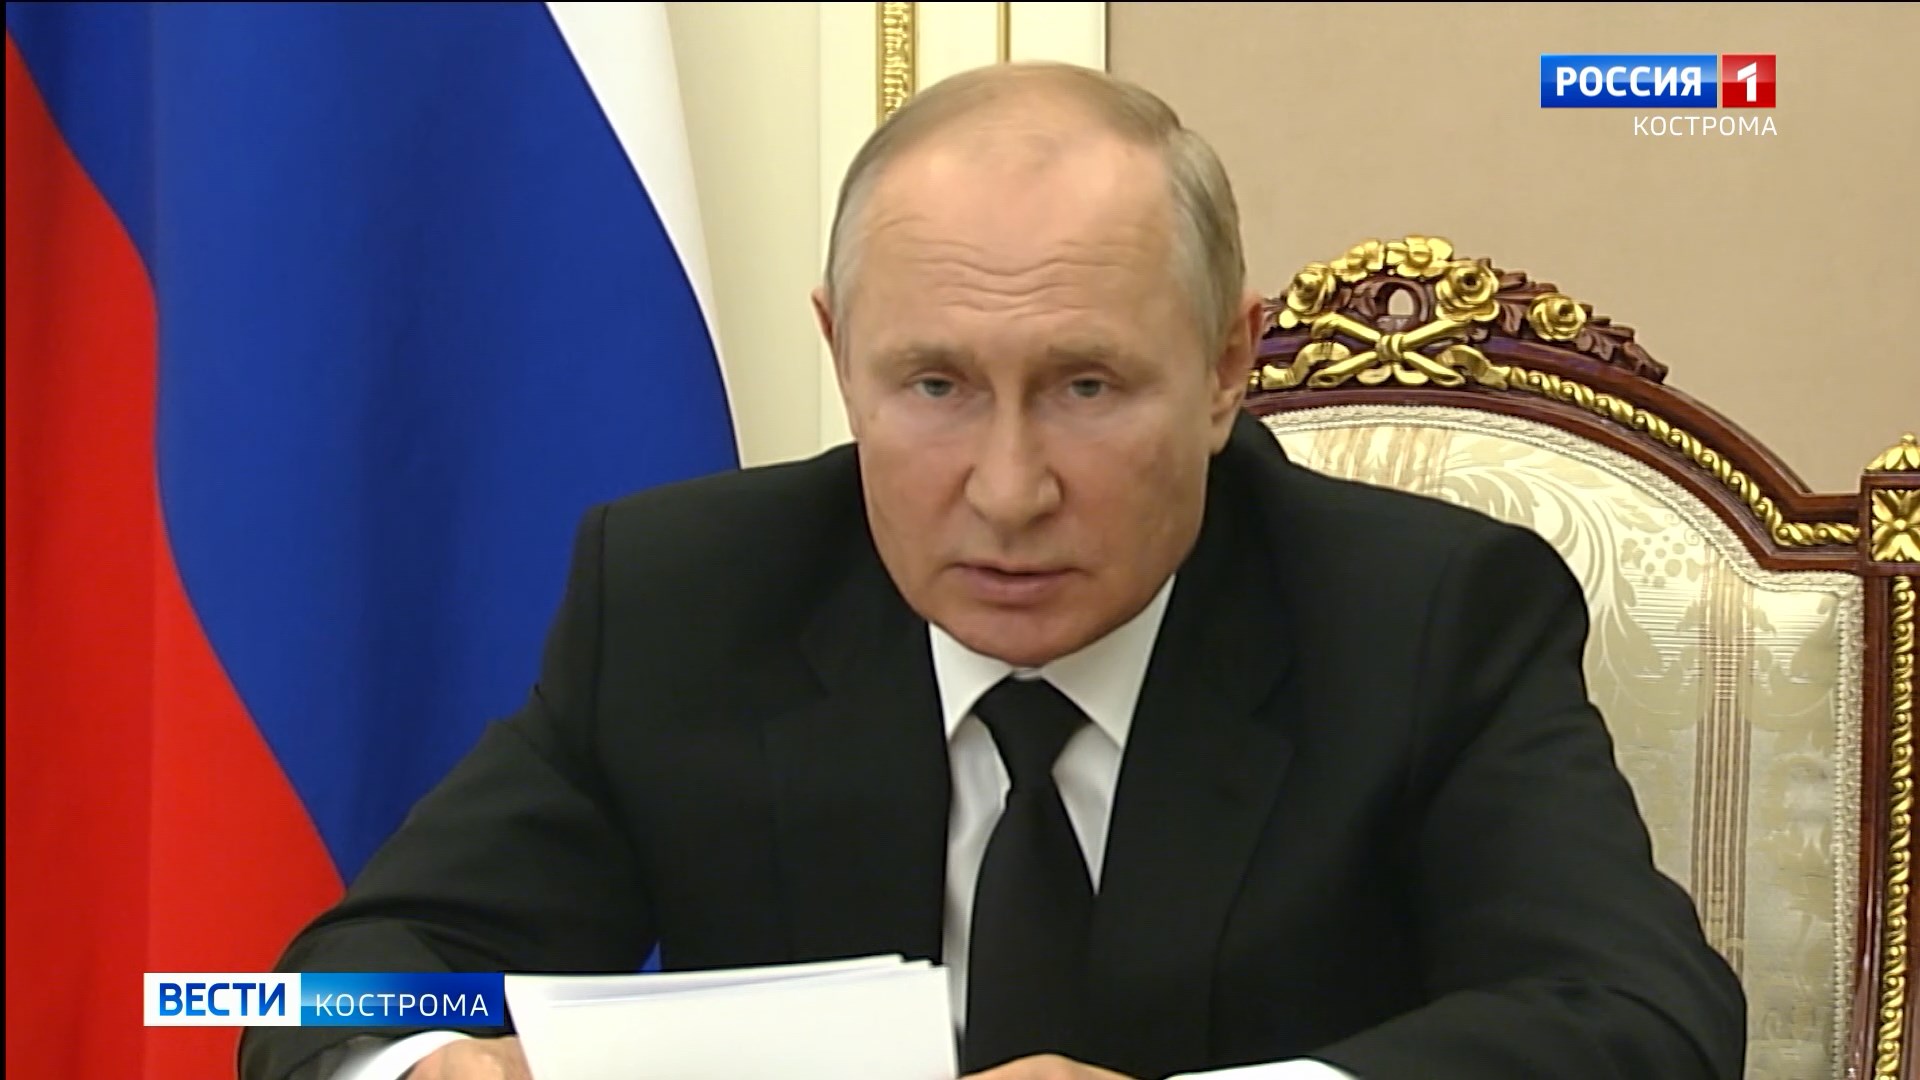 Владимир Путин отметил вклад Костромы в общую Победу